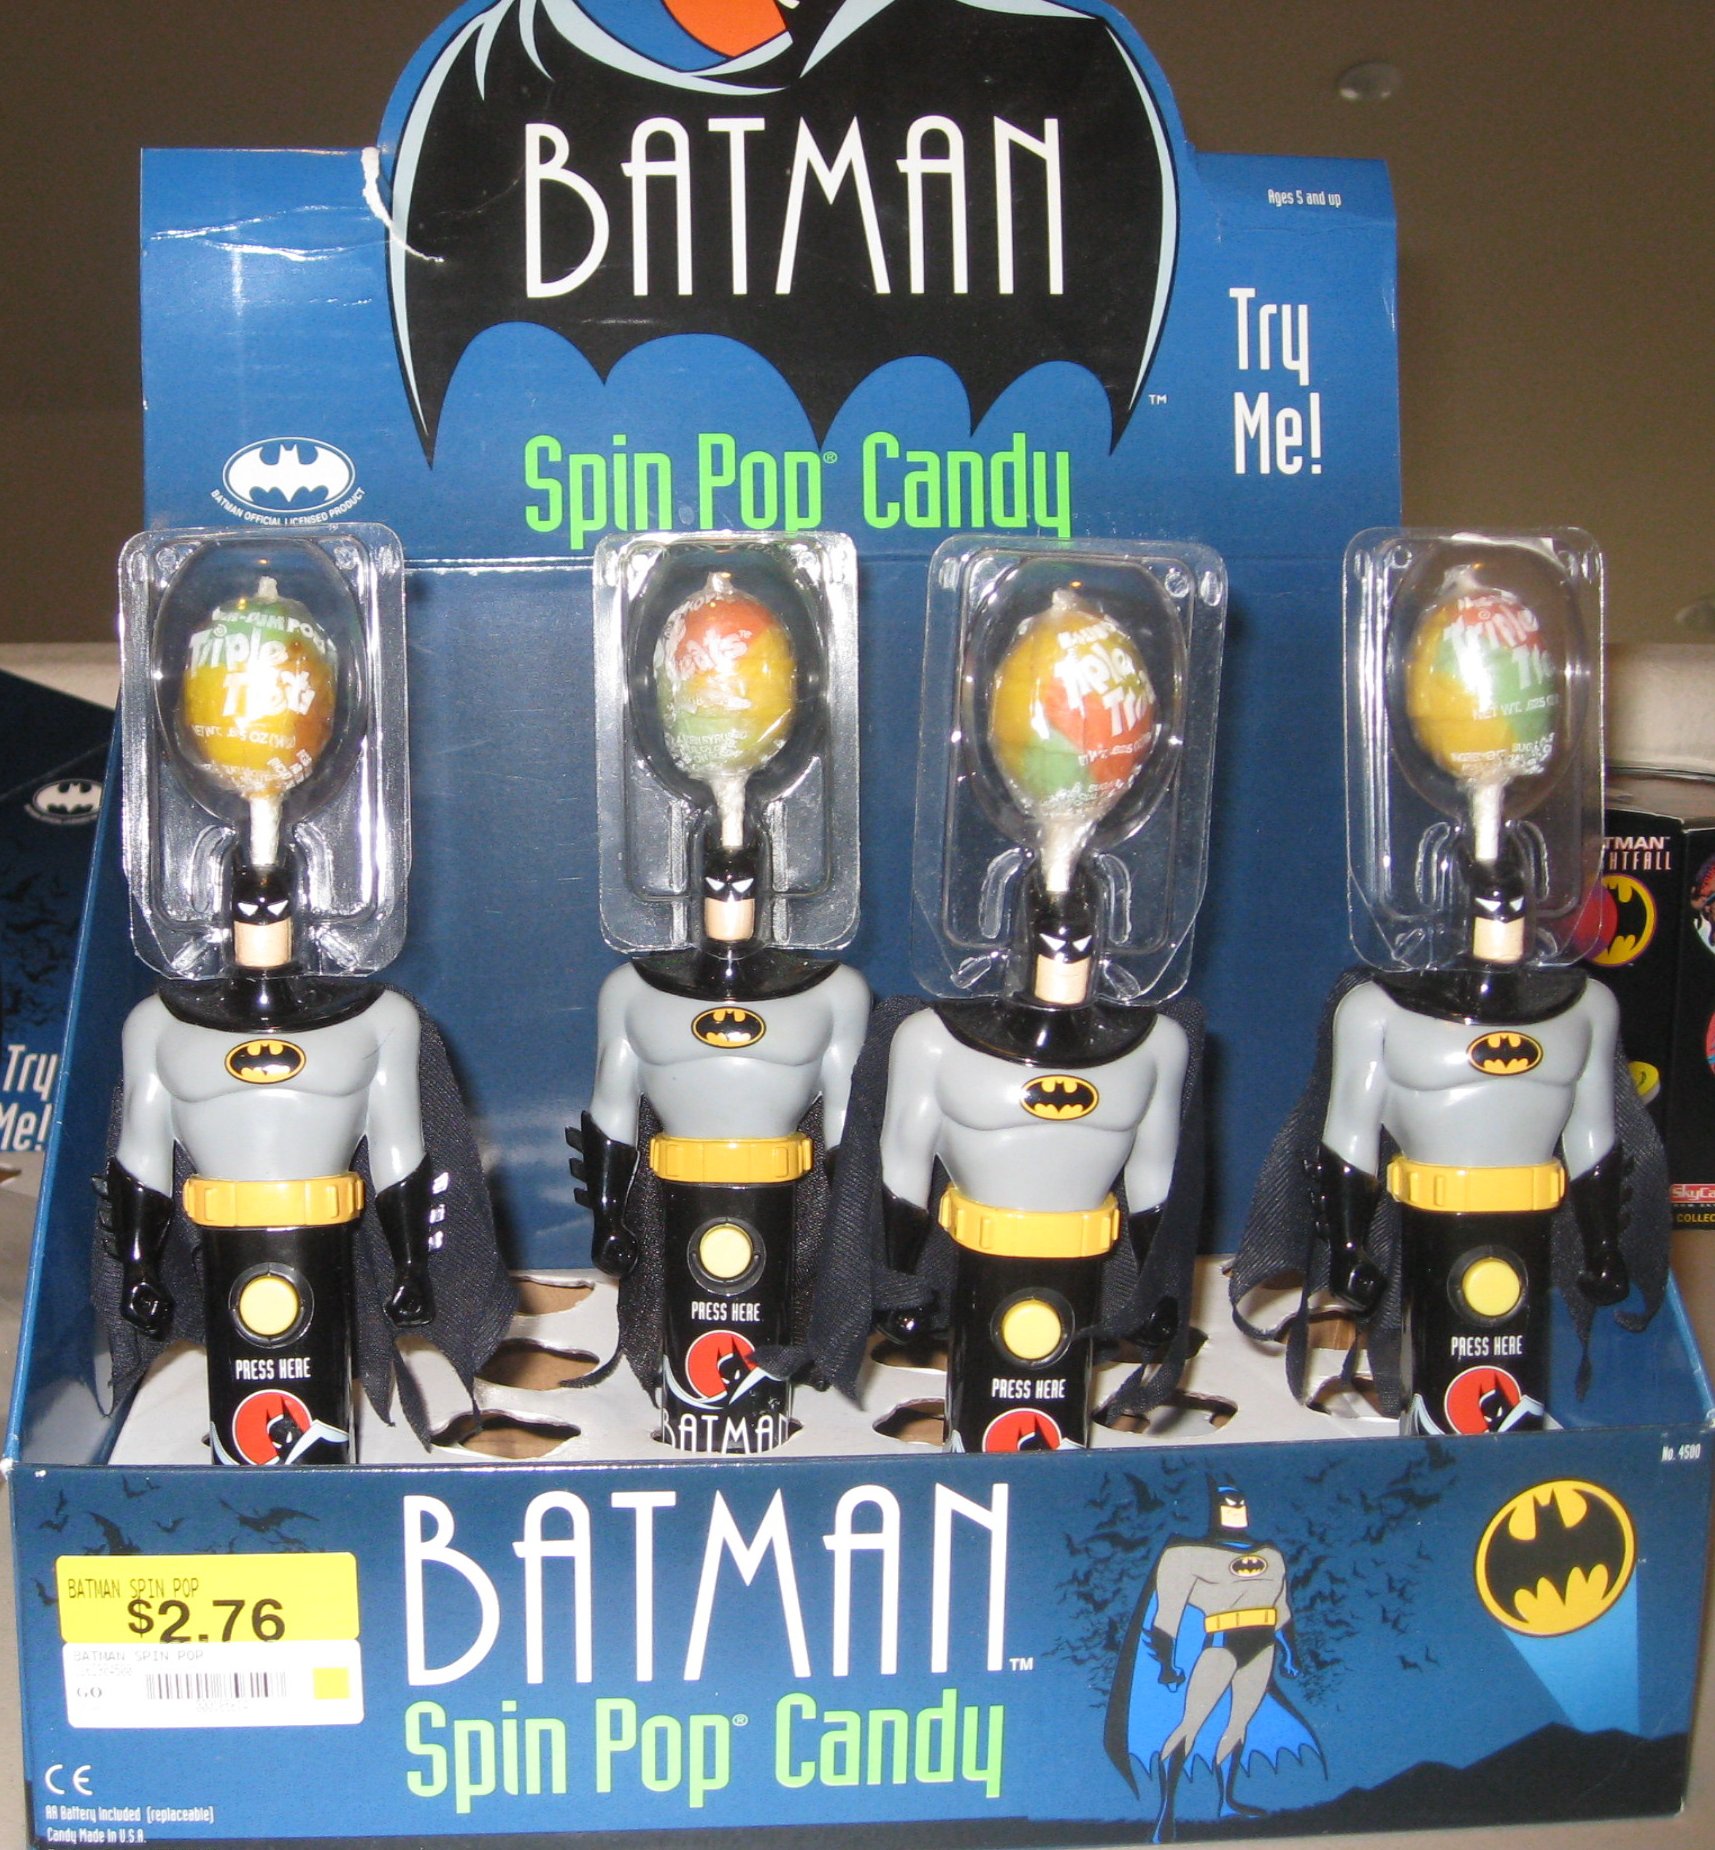 robot - Batman Spin Pop Candy 4 1276 Batman Spin Pop Candy